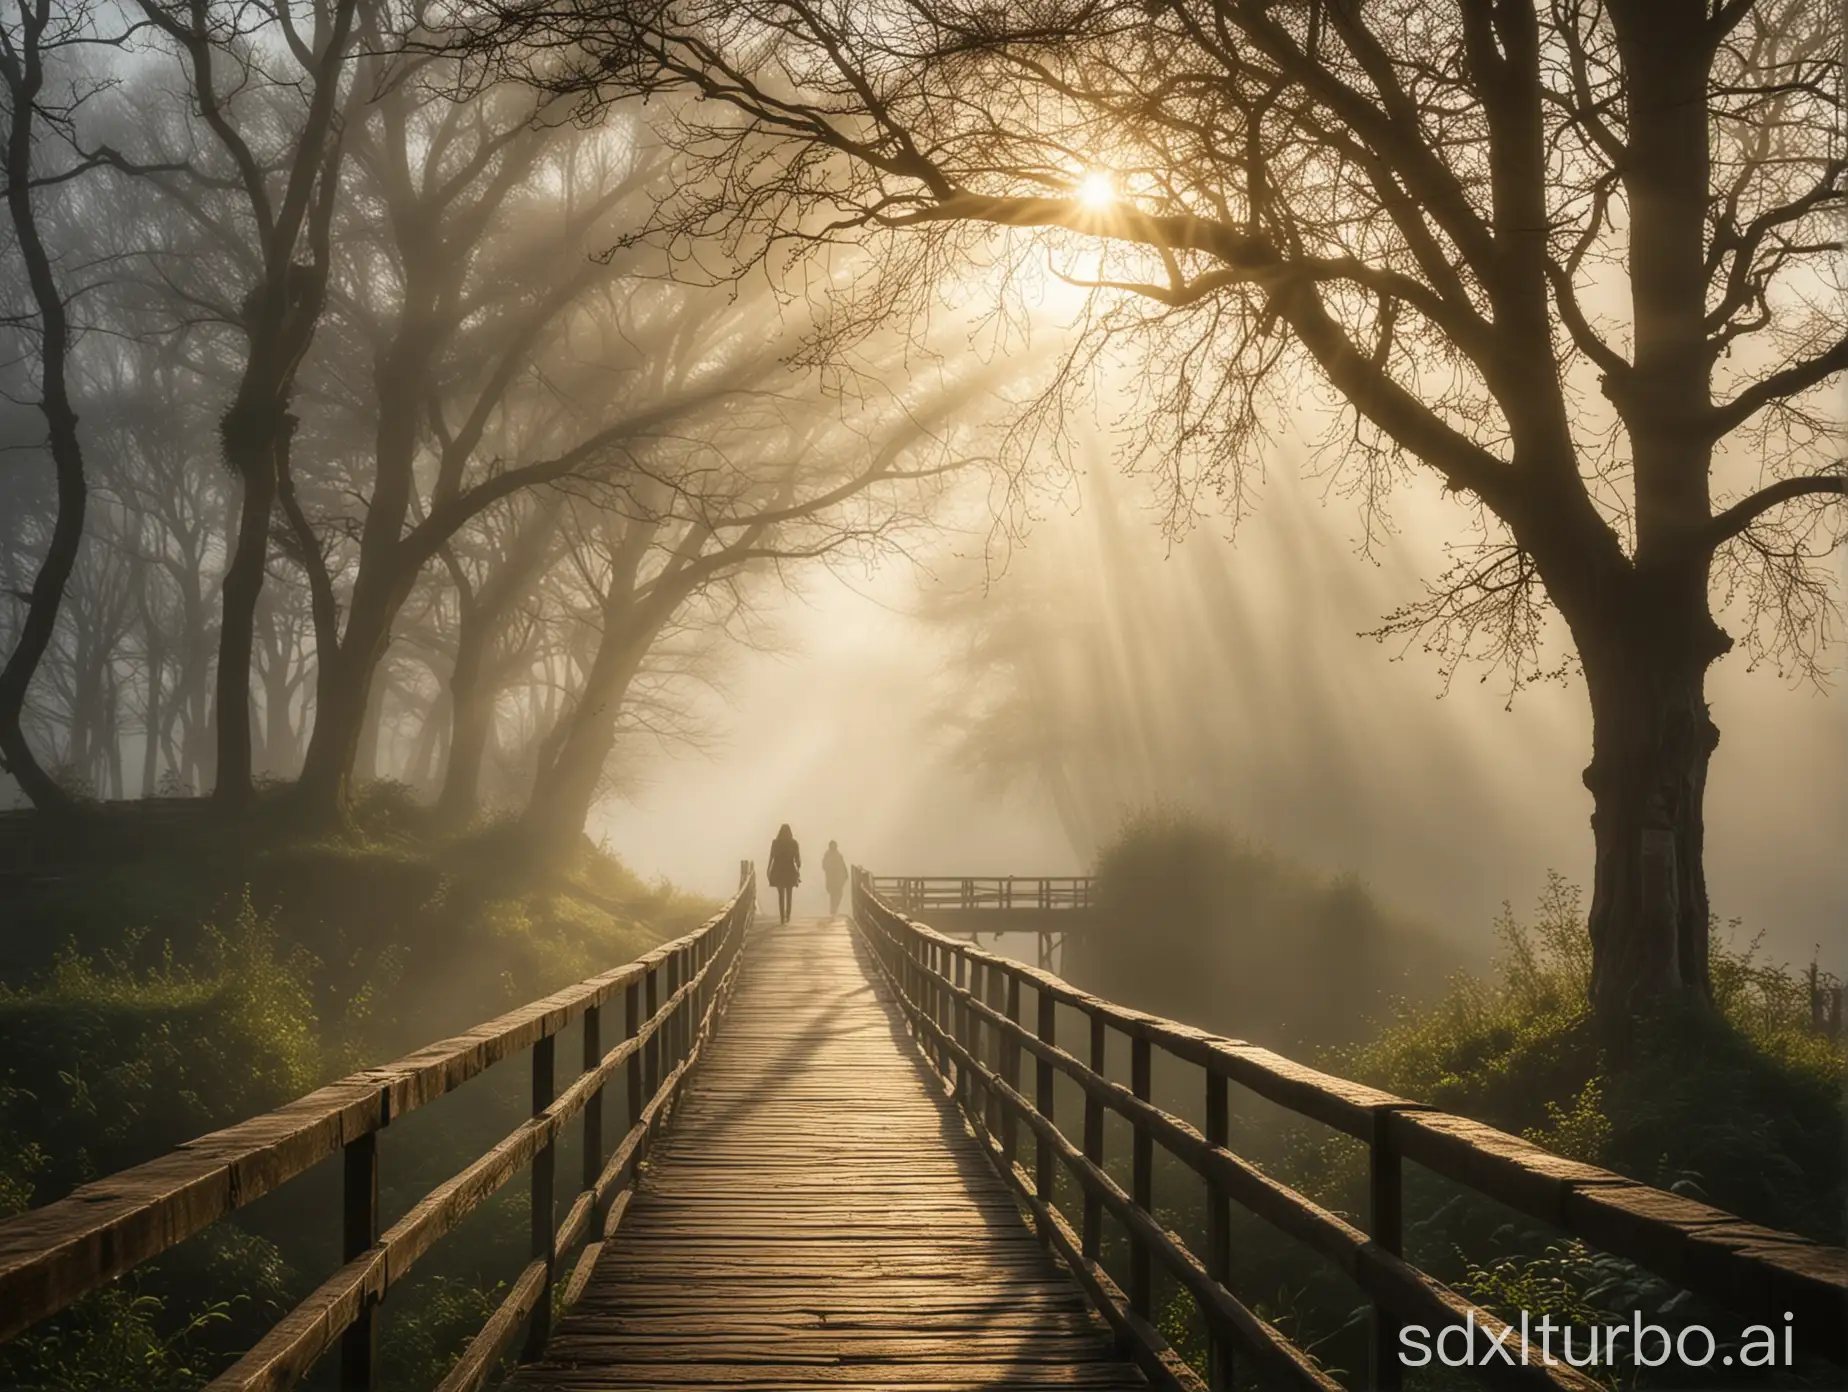 Mystische Landschaft, Nebel, Baum, Person, Brücke, Sonnenstrahlen